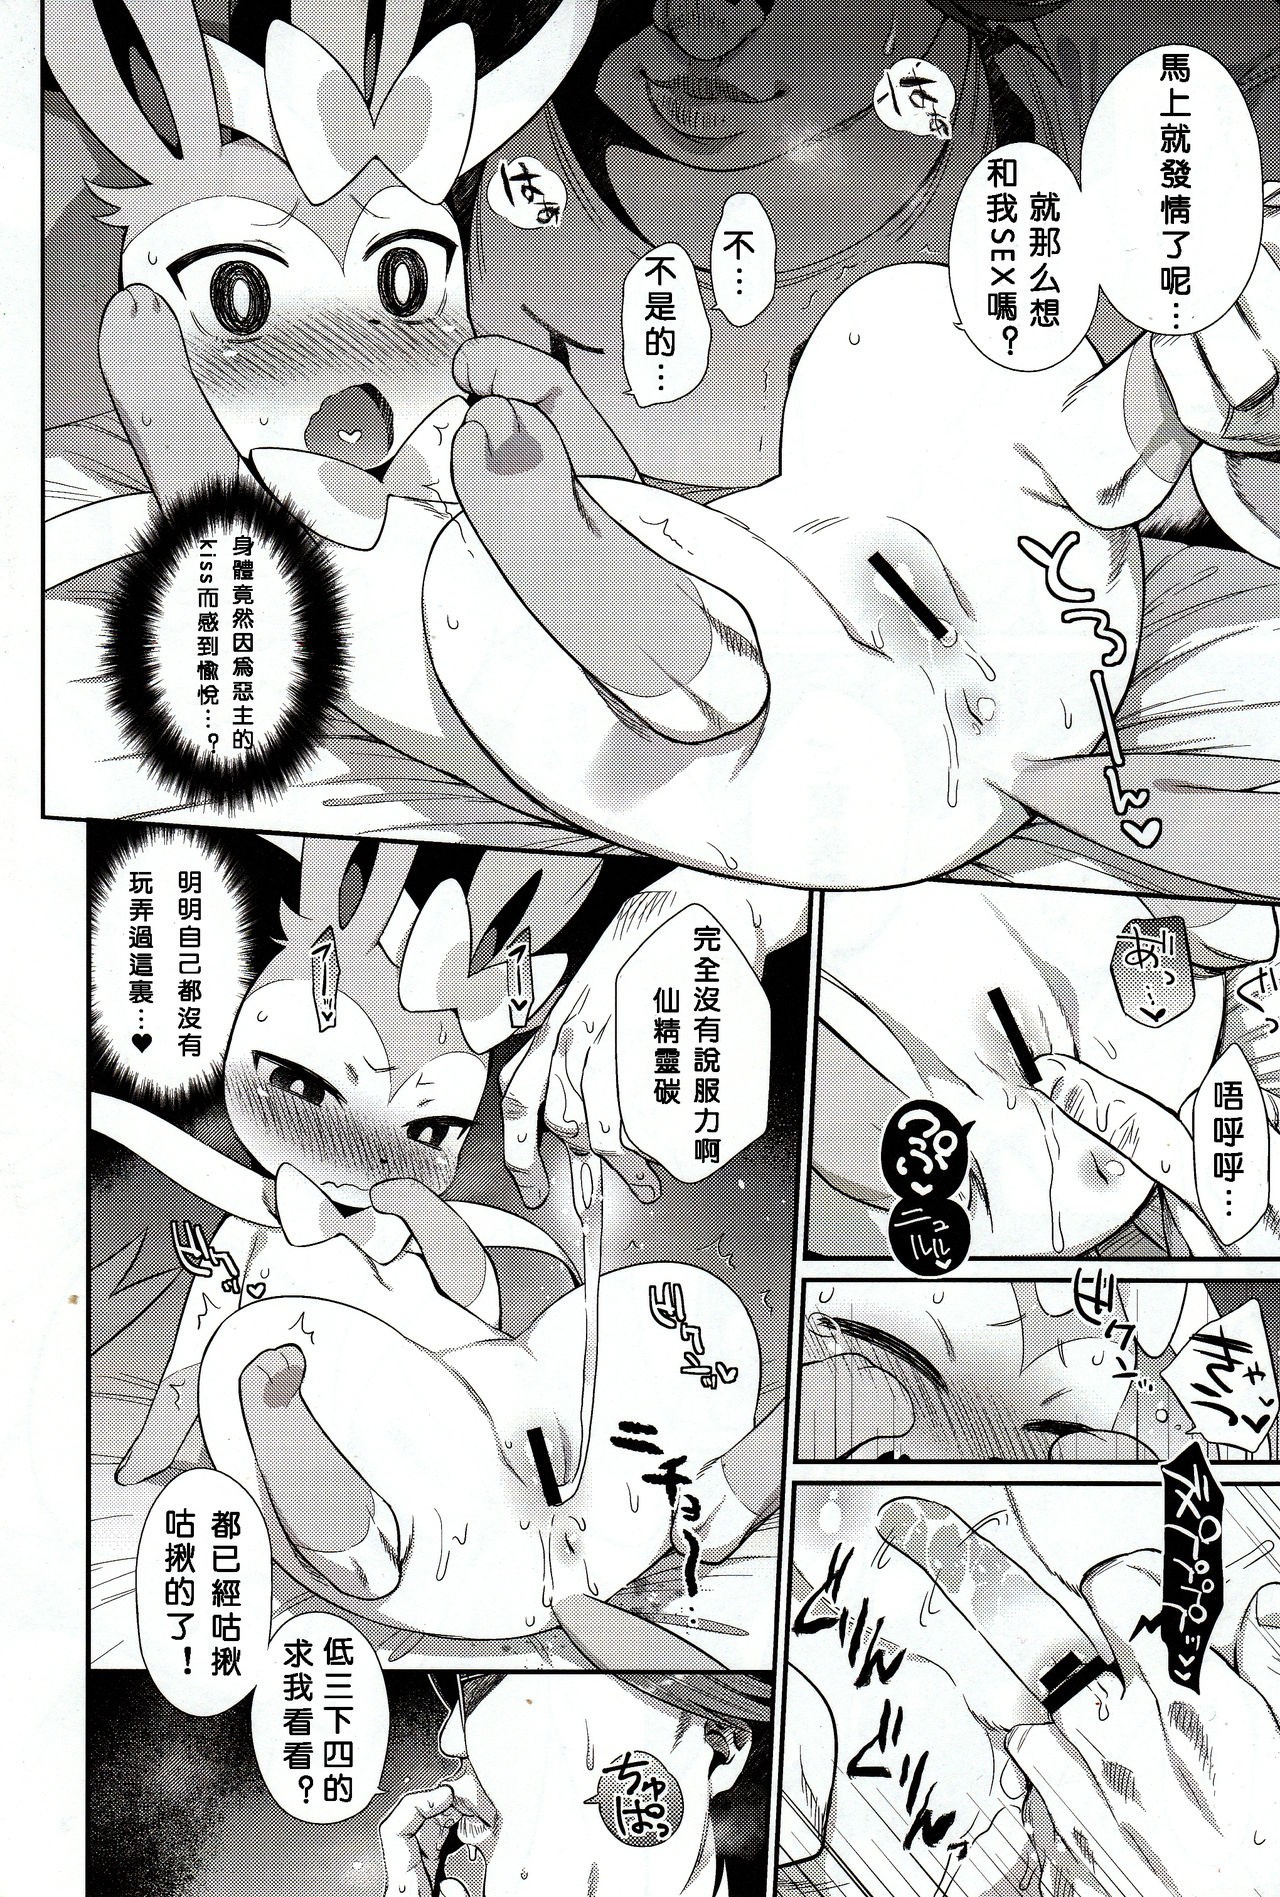 Hankouki Monster hentai manga picture 5